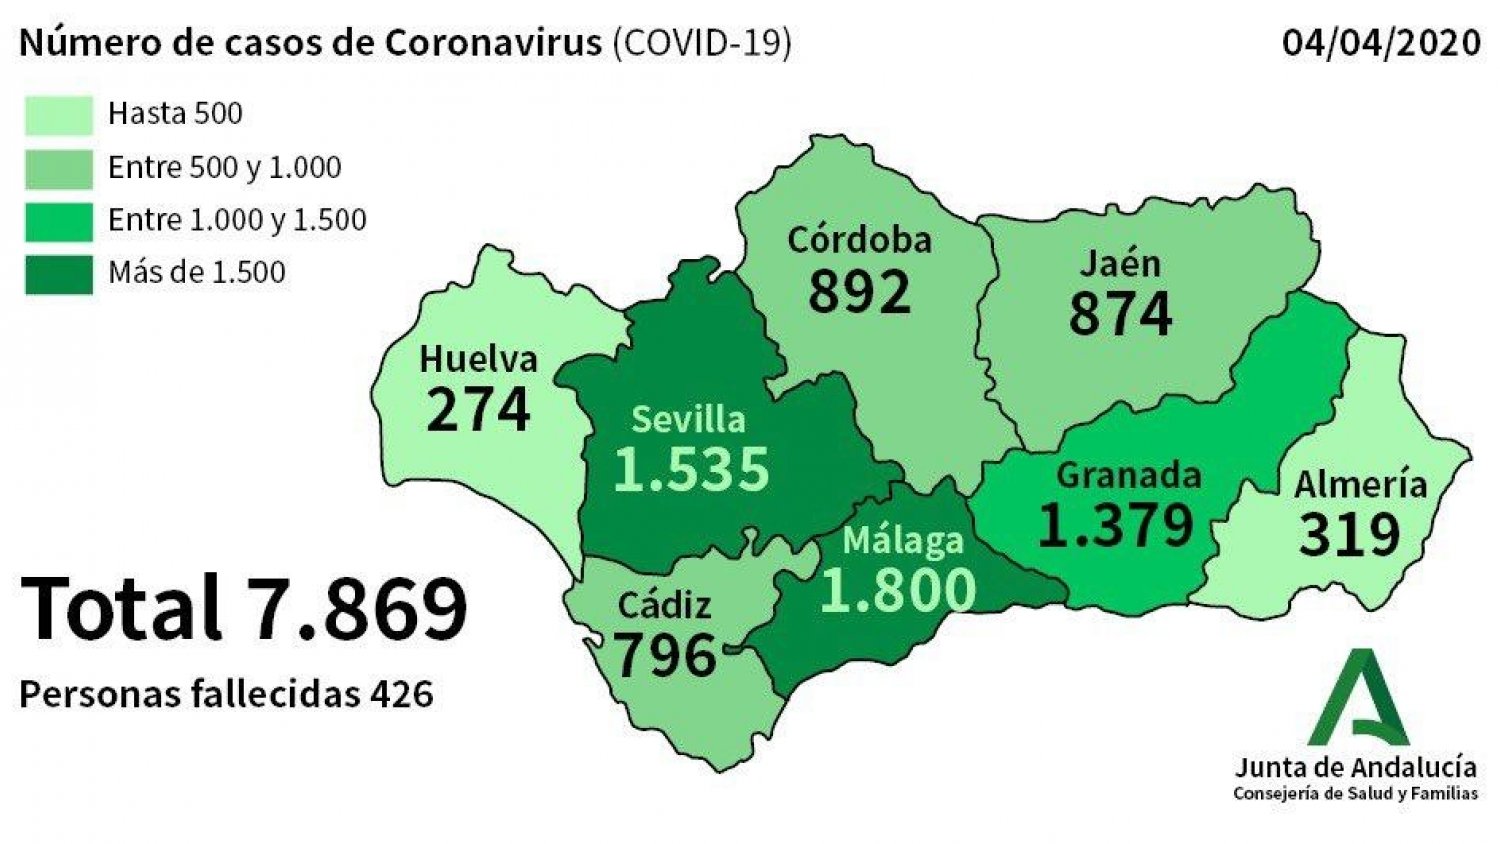 Confirman 75 nuevos casos por coronavirus en Málaga, el total de afectados asciende a 1.800 personas